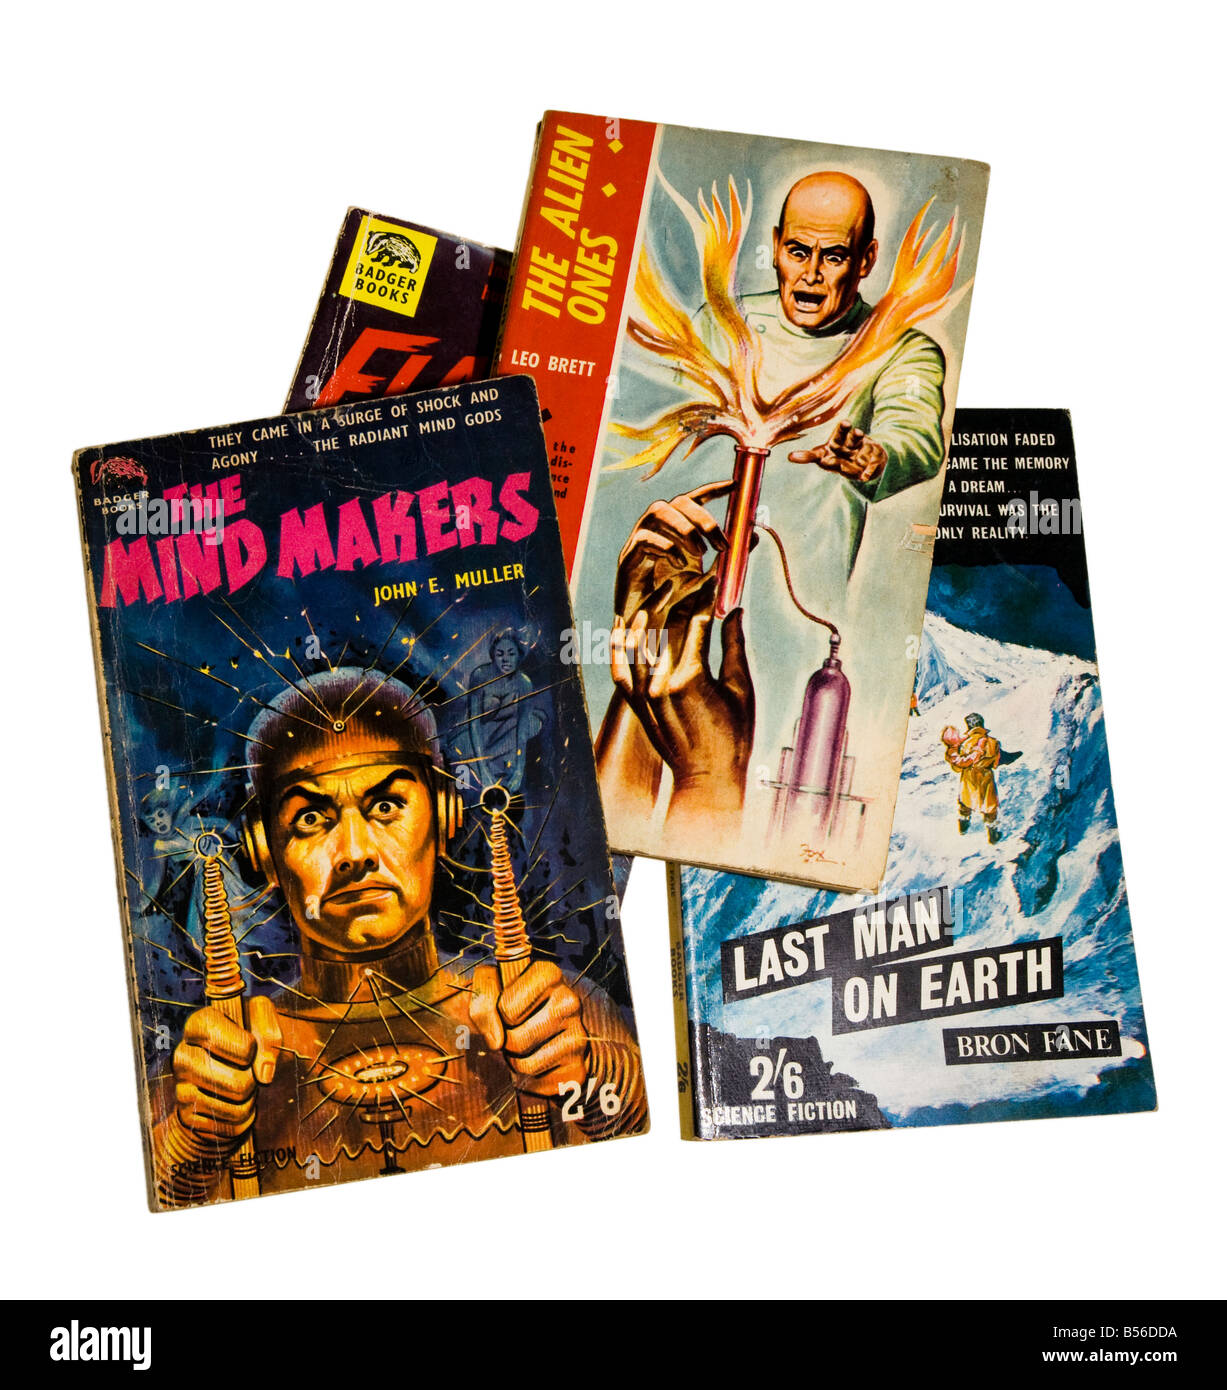 Portadas de libros de ciencia ficción de pulpa temprano publicado por Badger libros en los decenios de 1950 y 1960 Foto de stock